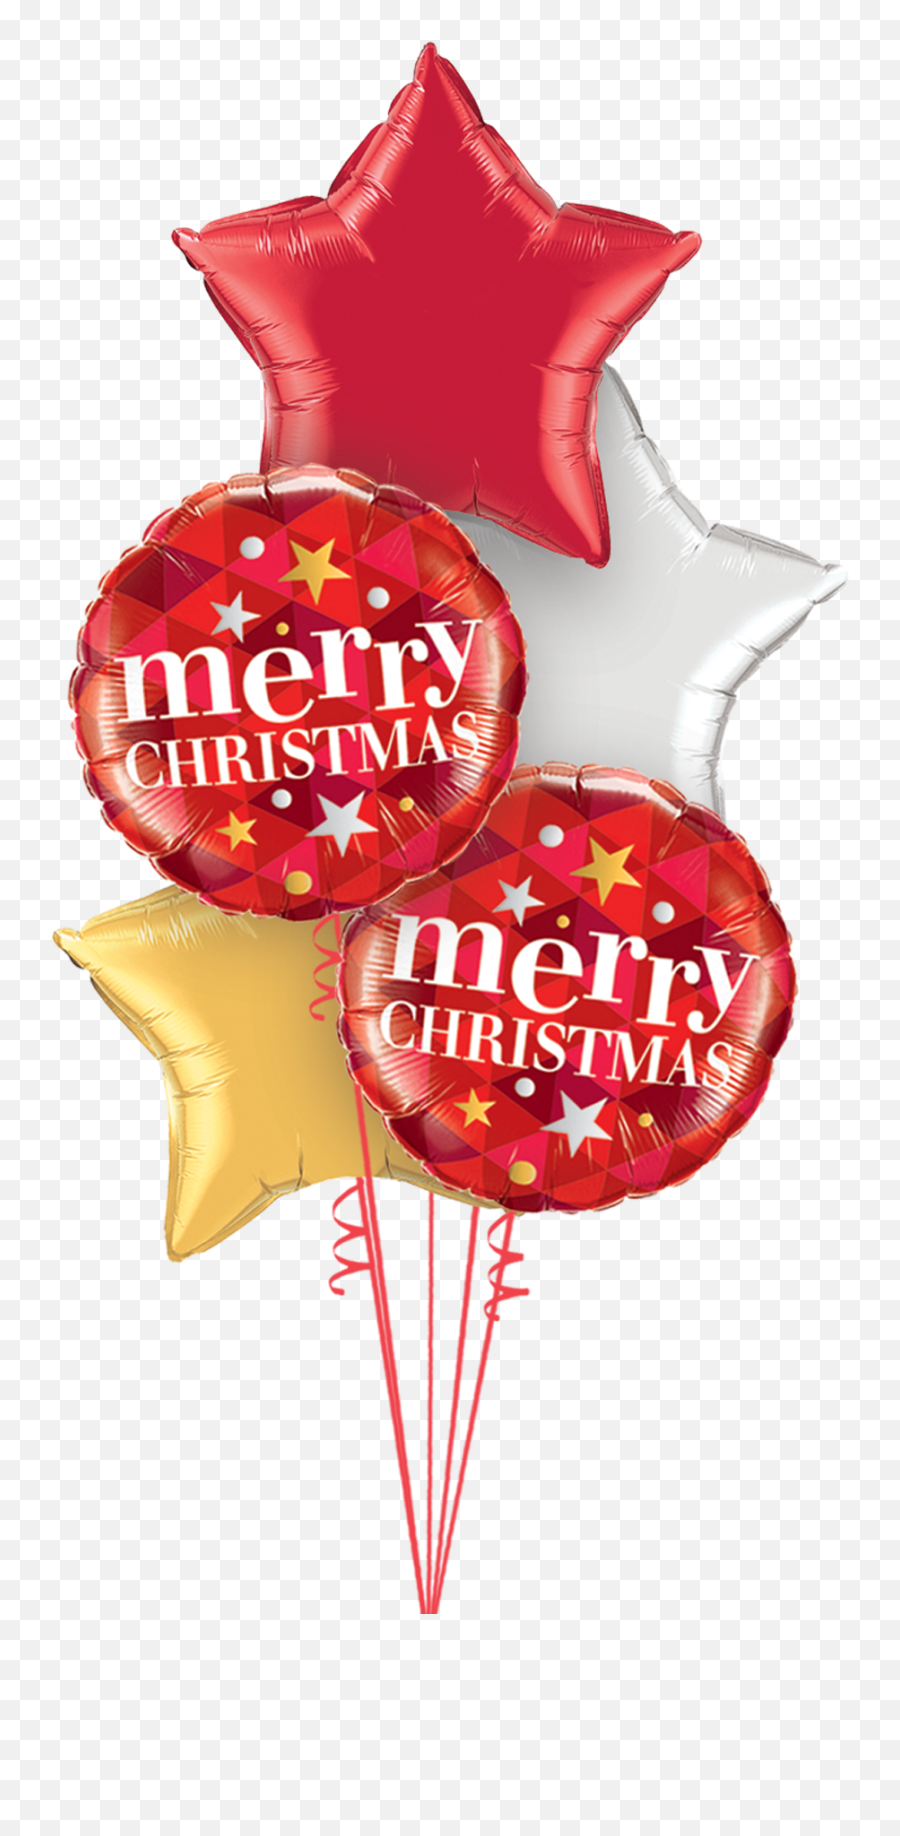 Merry Christmas - Globos De Estrellas De Colores Emoji,Merry Christmas Png